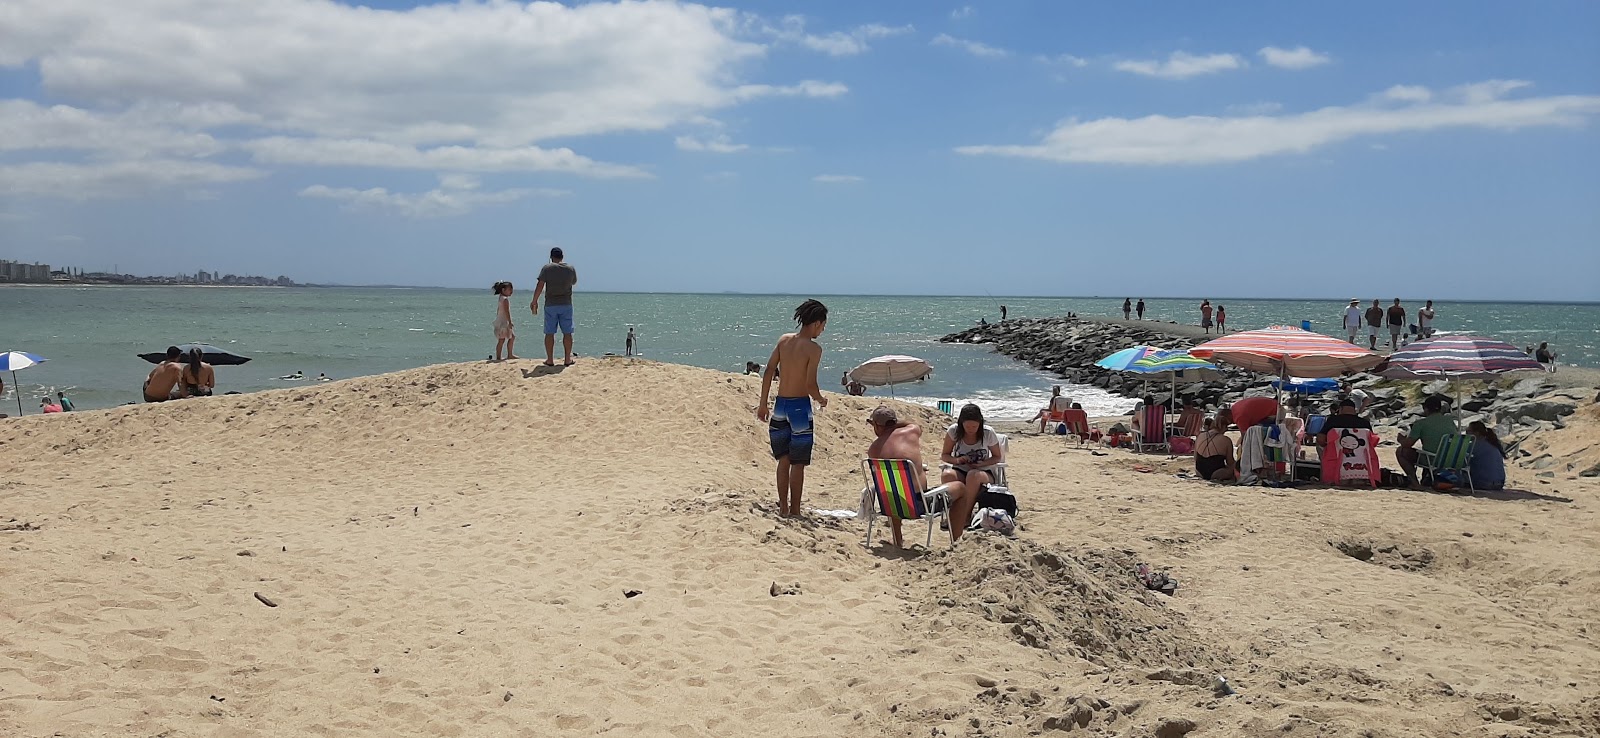 伊塔胡巴海滩的照片 具有非常干净级别的清洁度